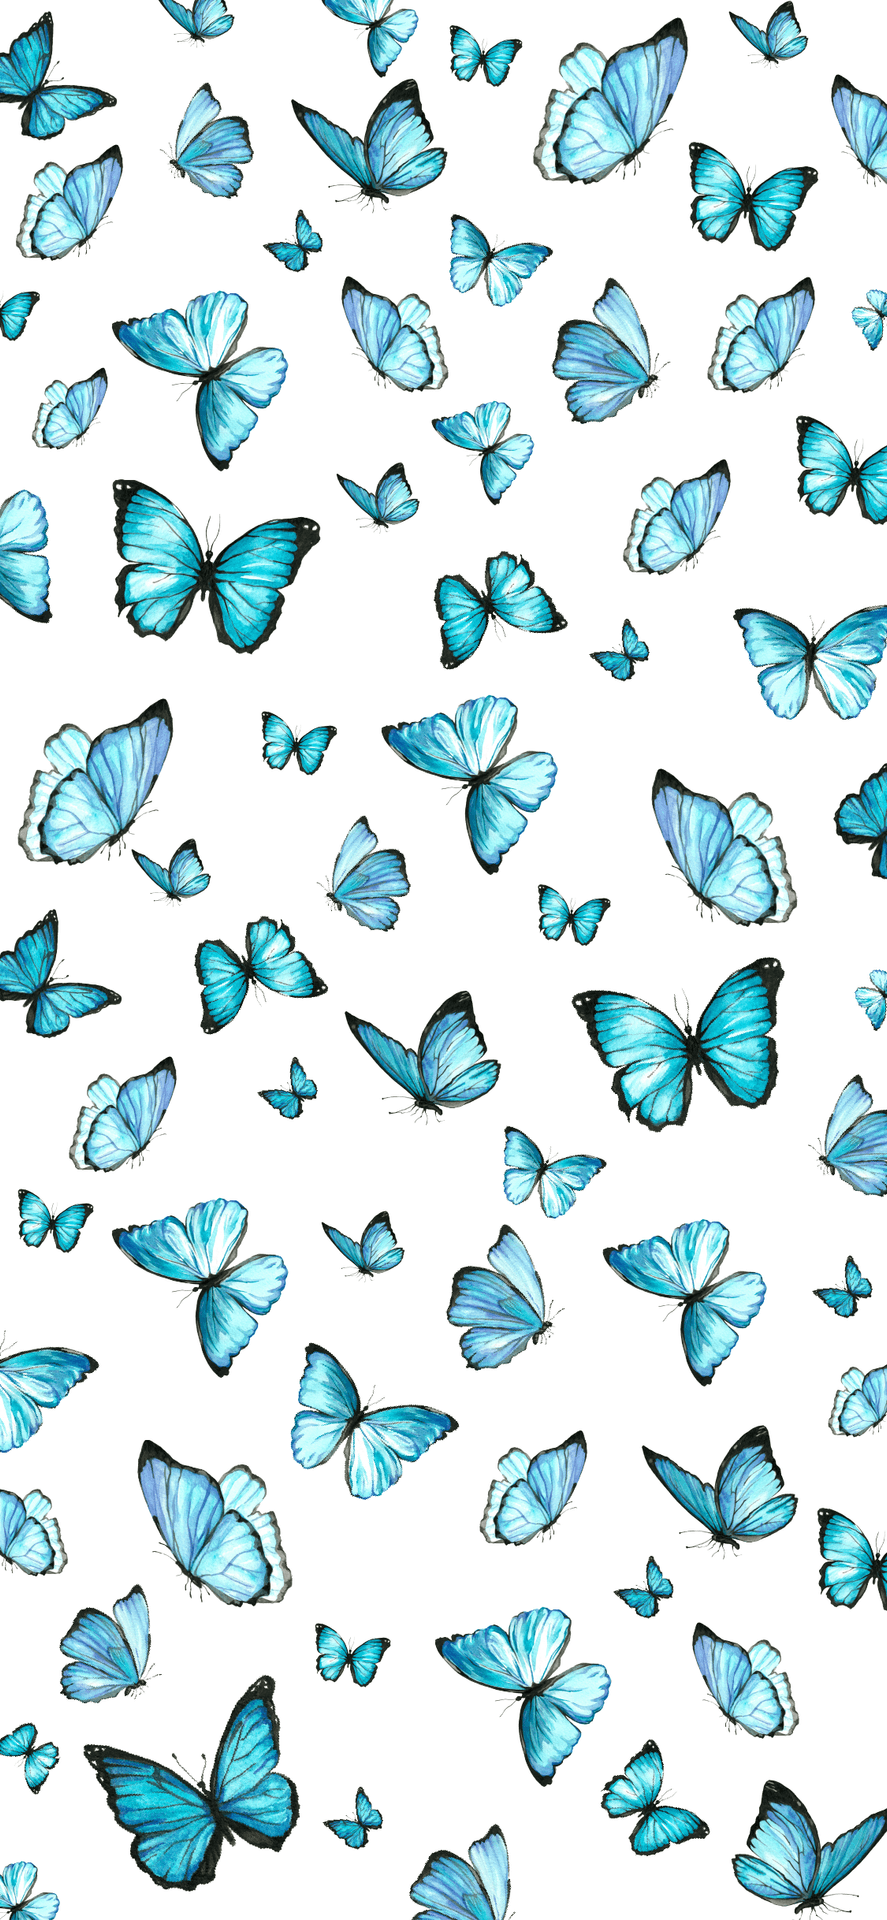 A Glowing Blue Butterfly